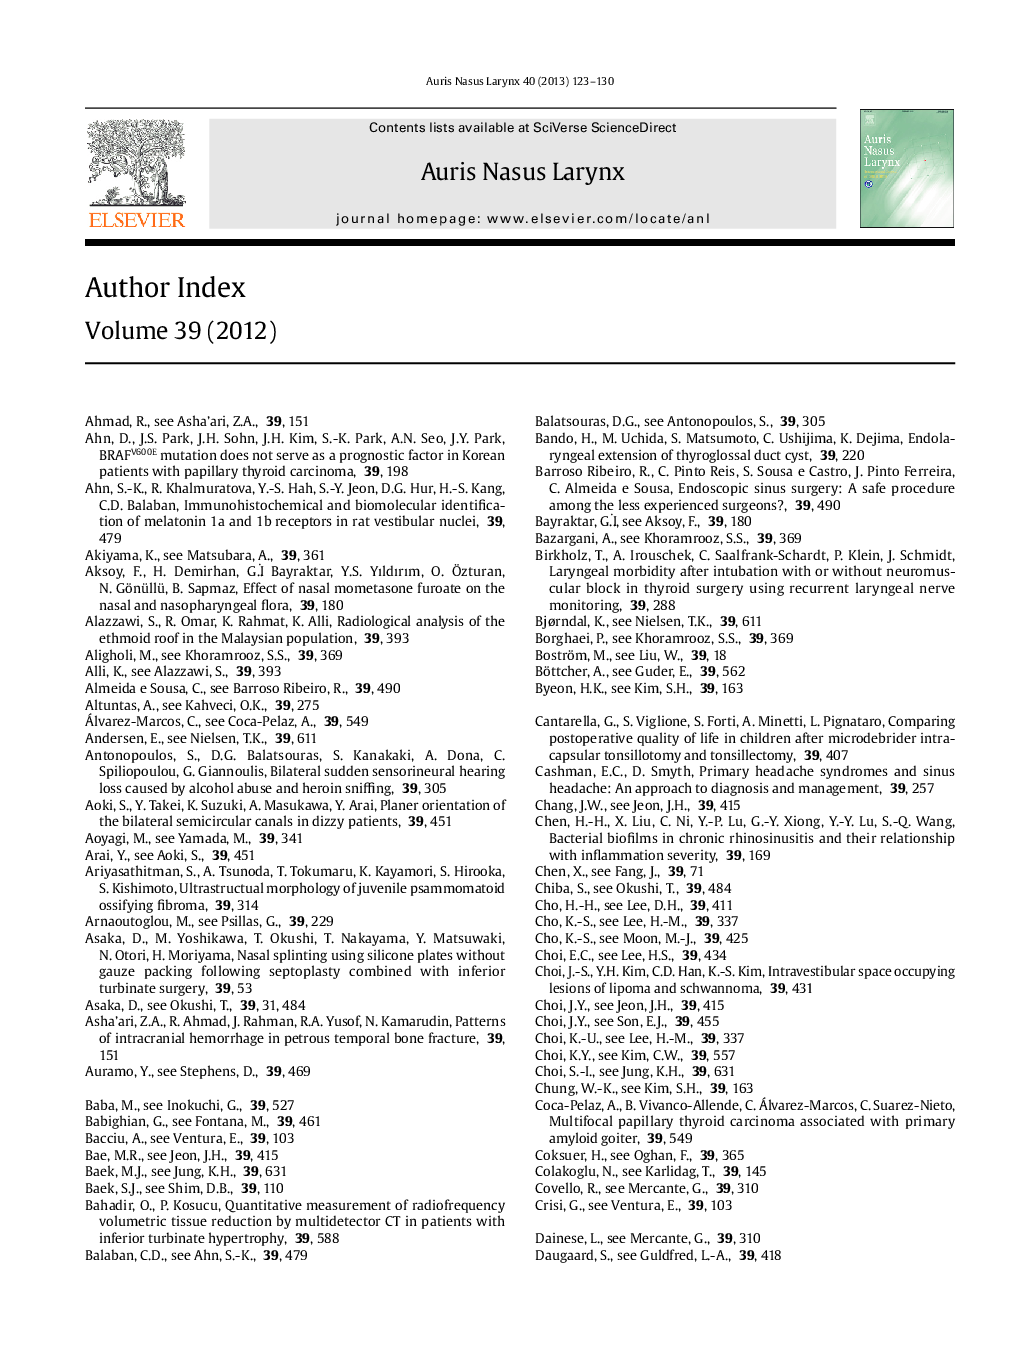 Author Index Volume 39 (2012)